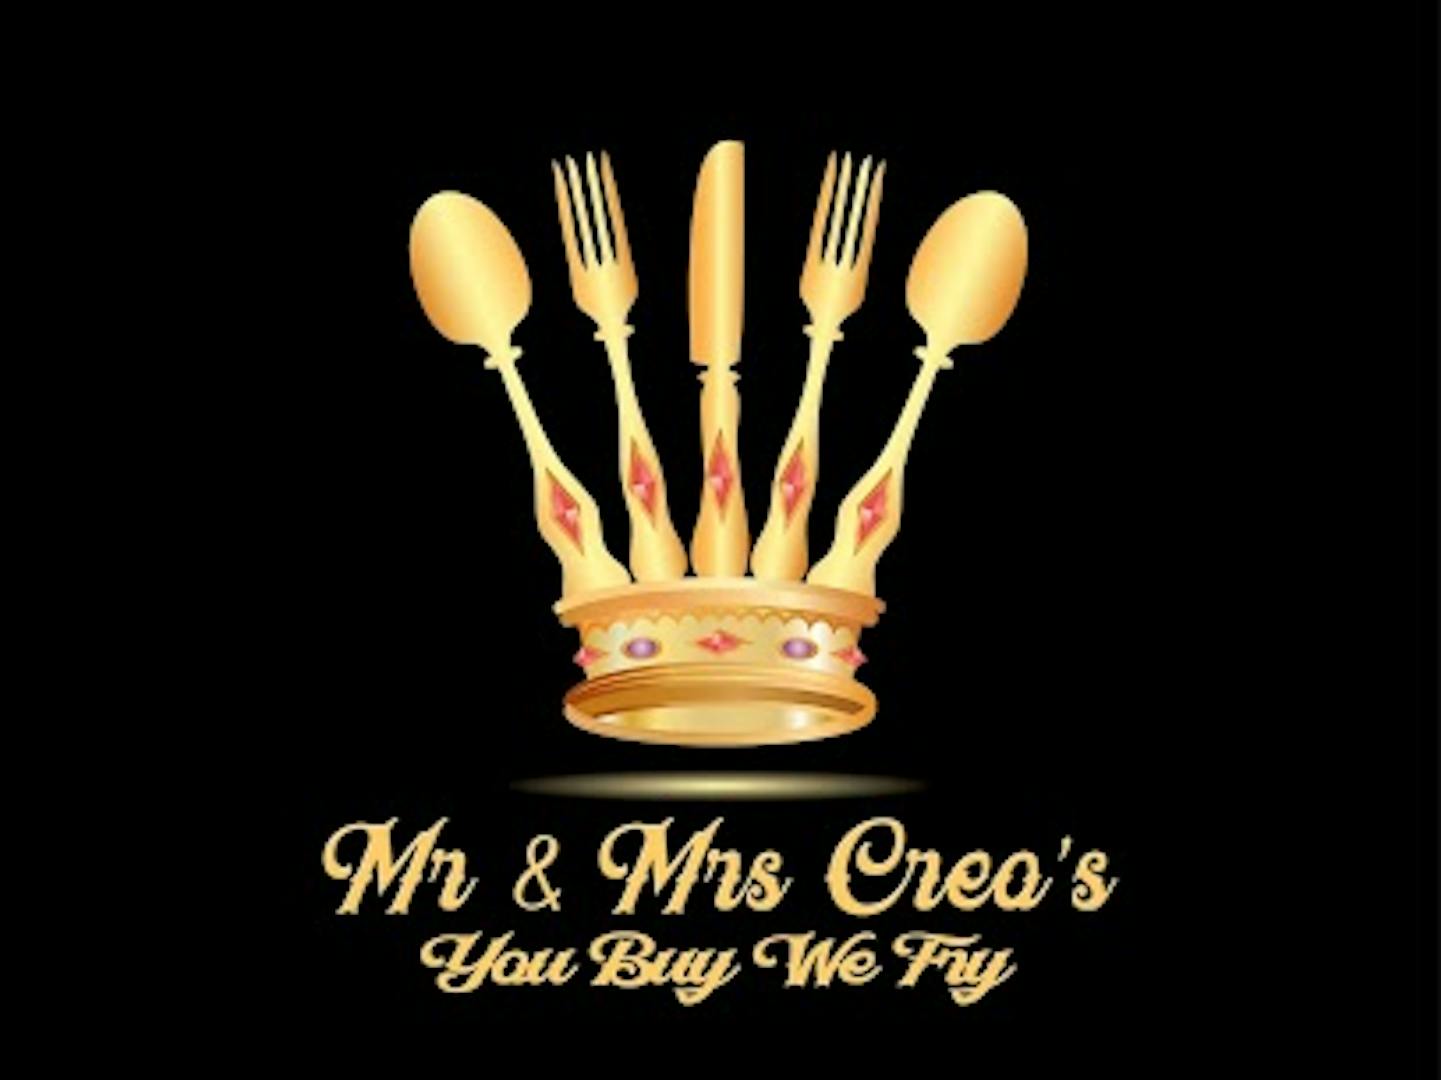 Mr & Mrs Creo's